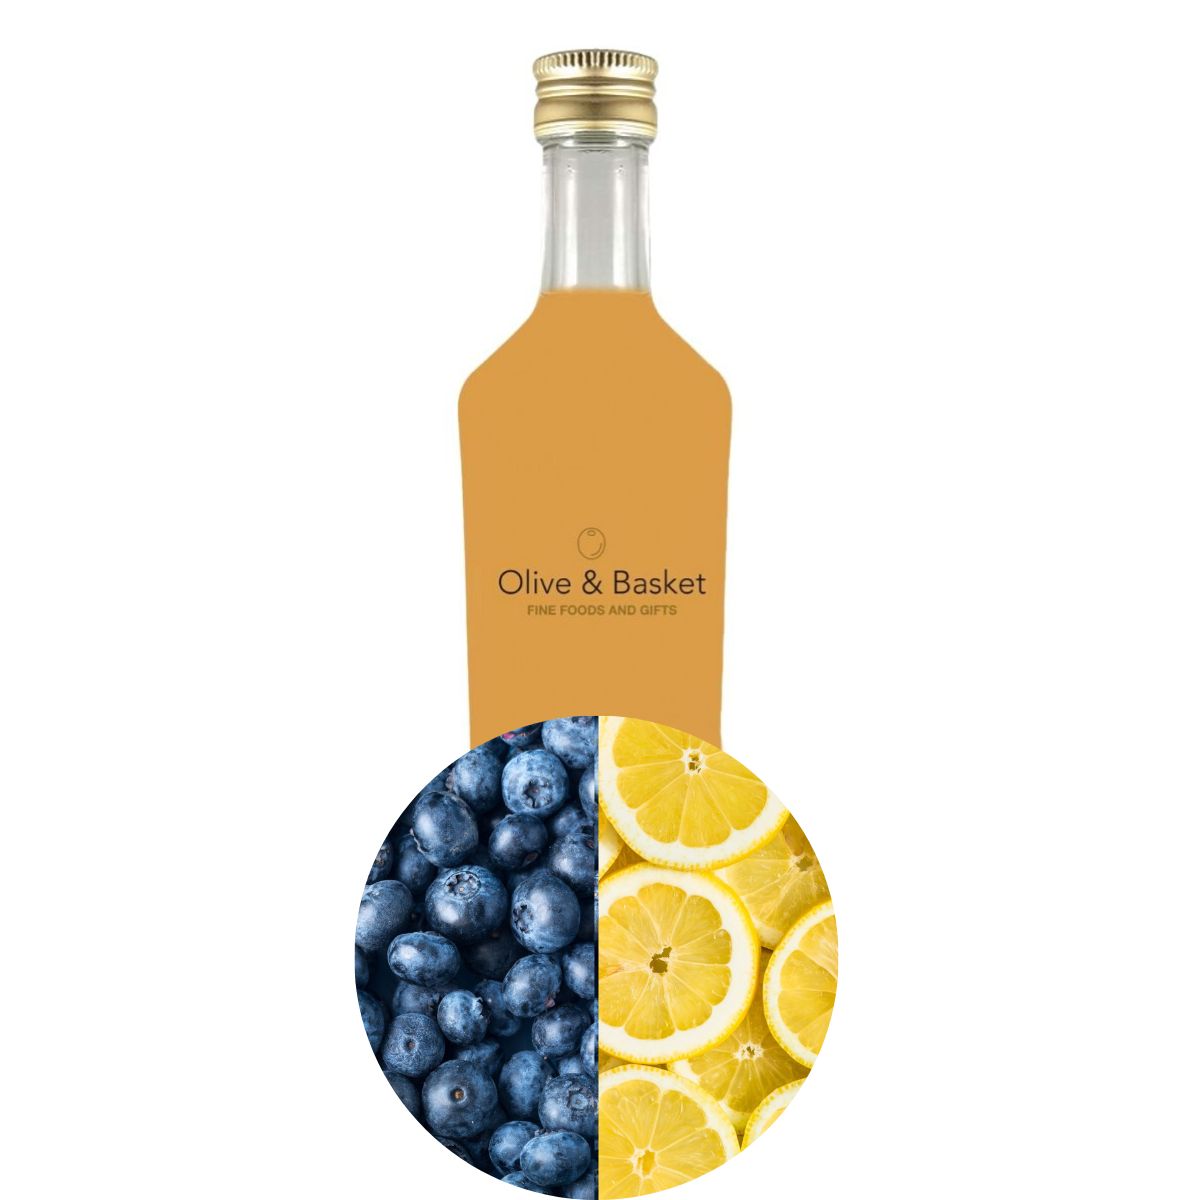 Bottle of Blueberry Lemon White Balsamic Vinegar with icon of blueberries and lemon slices.